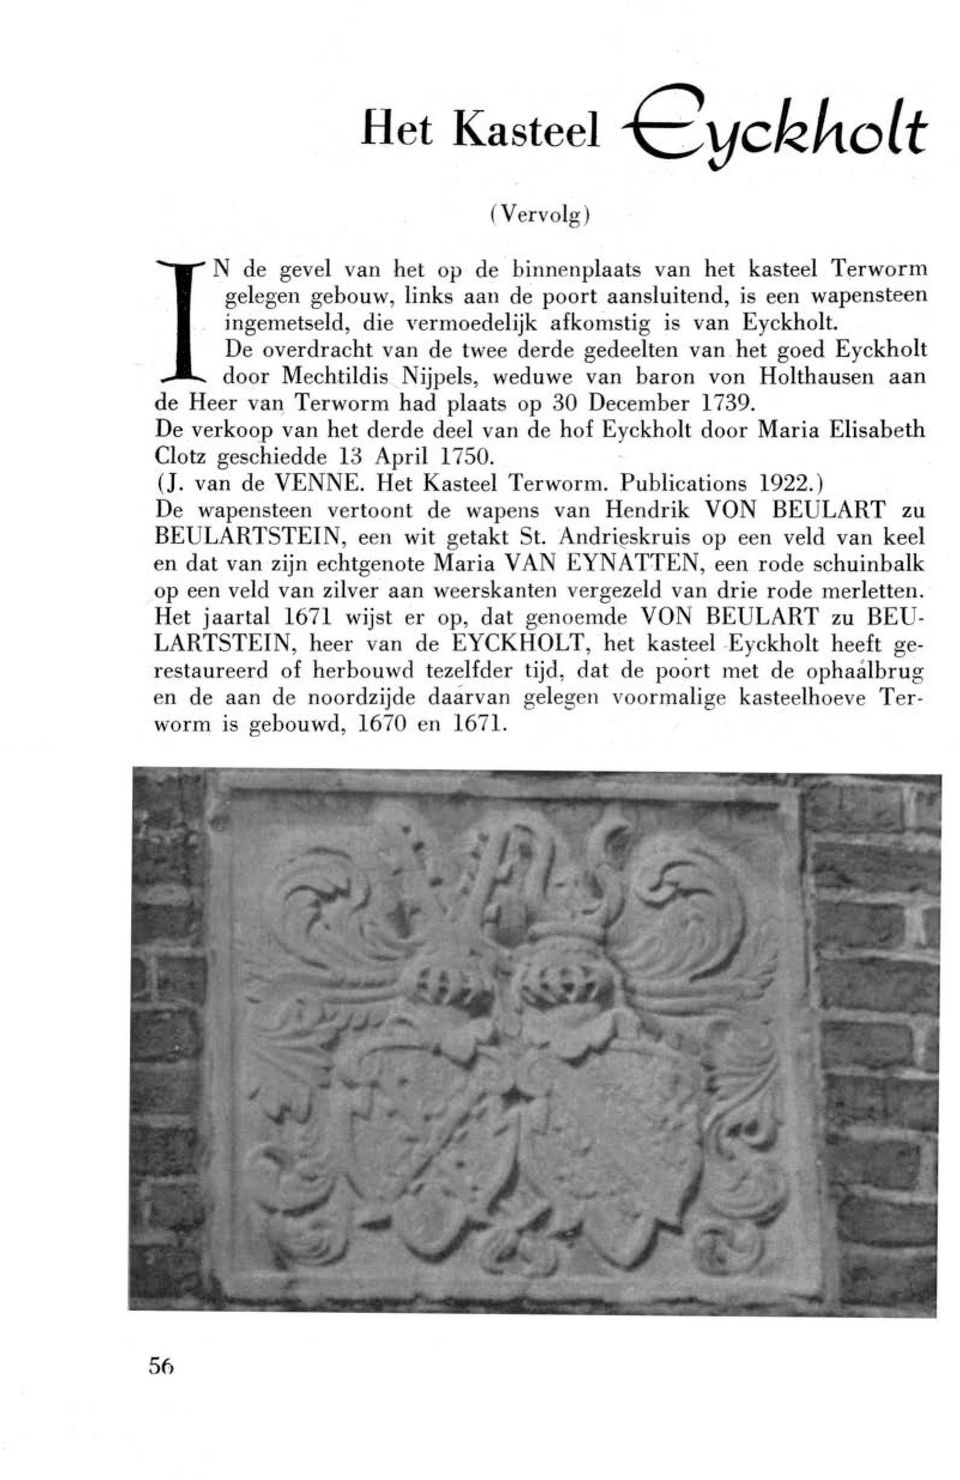 De verkoop van het derde deel van de hof Eyckholt door Maria Elisabeth Clotz geschiedde 13 April 1750. (J. van de VENNE. Het Kasteel Terworm. Publications 1922.